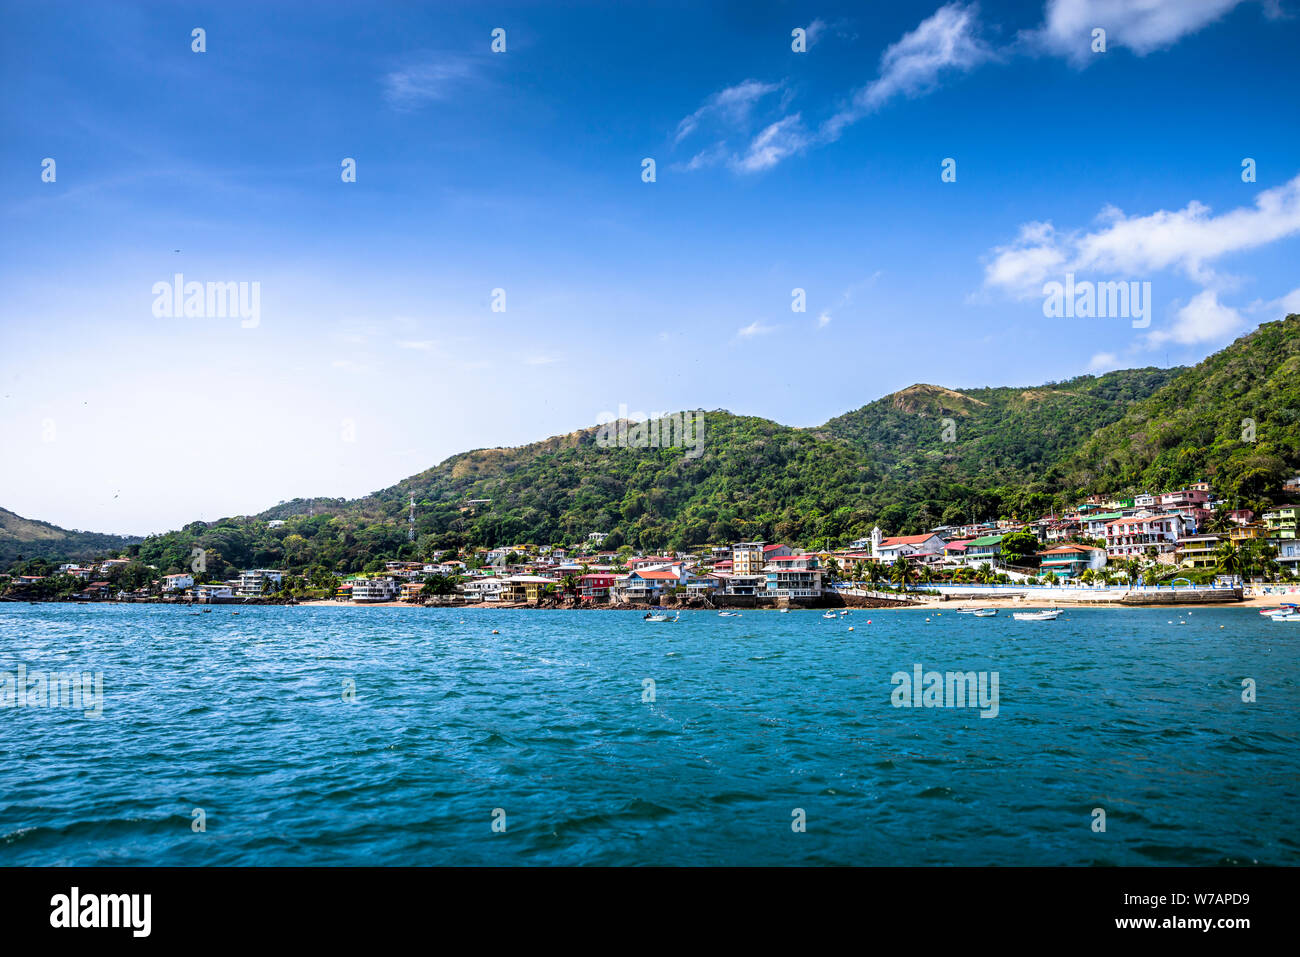 Dar es Salaam die Blume der Insel in der Nähe von Panama City Blick auf das Dorf und der Strand mit kleinen Booten Stockfoto